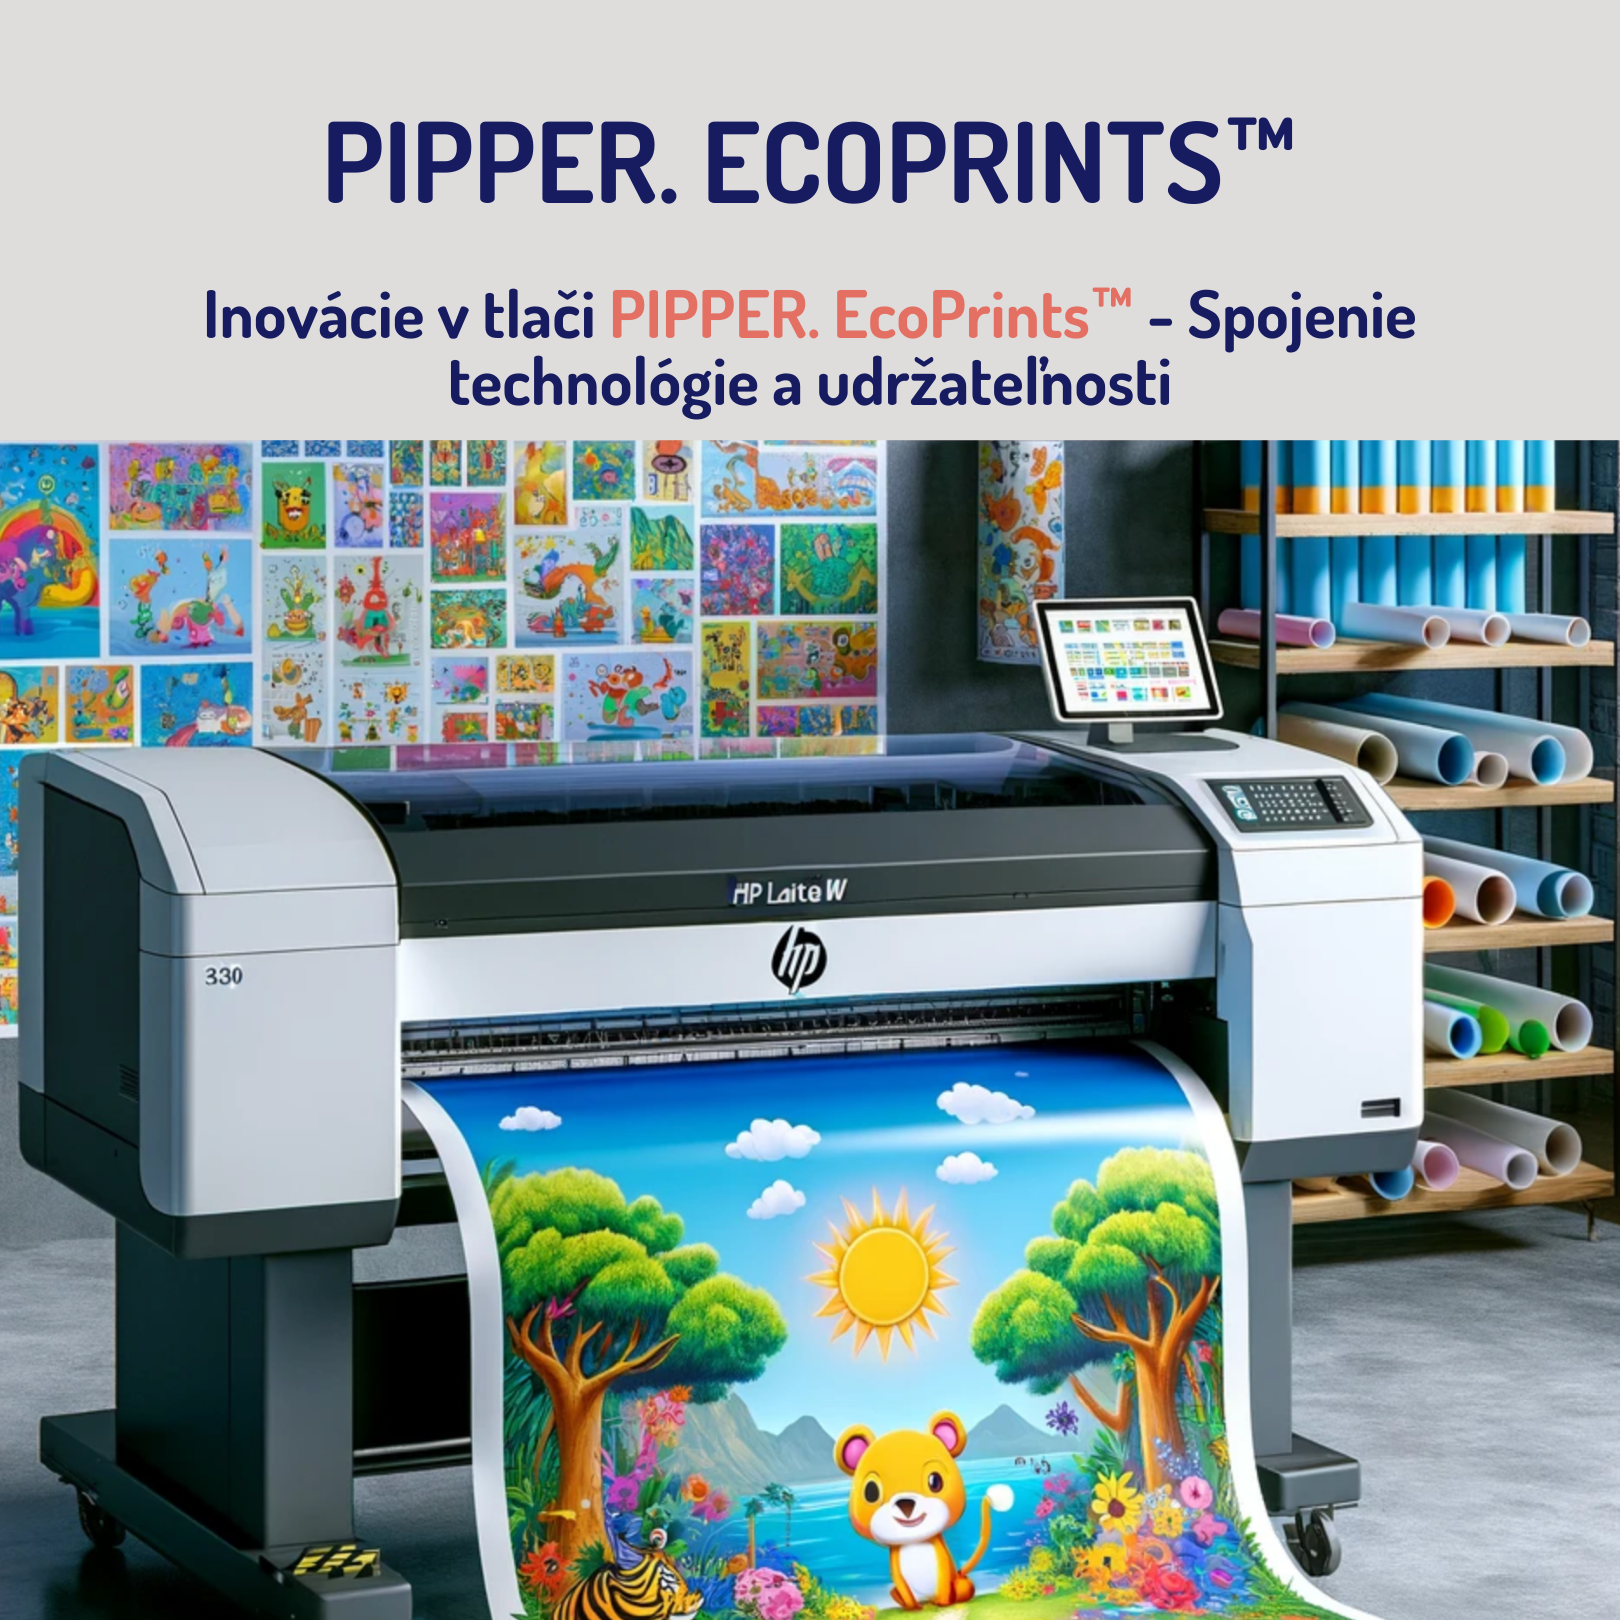 Inovácie v tlači PIPPER. EcoPrints™ - Spojenie technológie a udržateľnosti